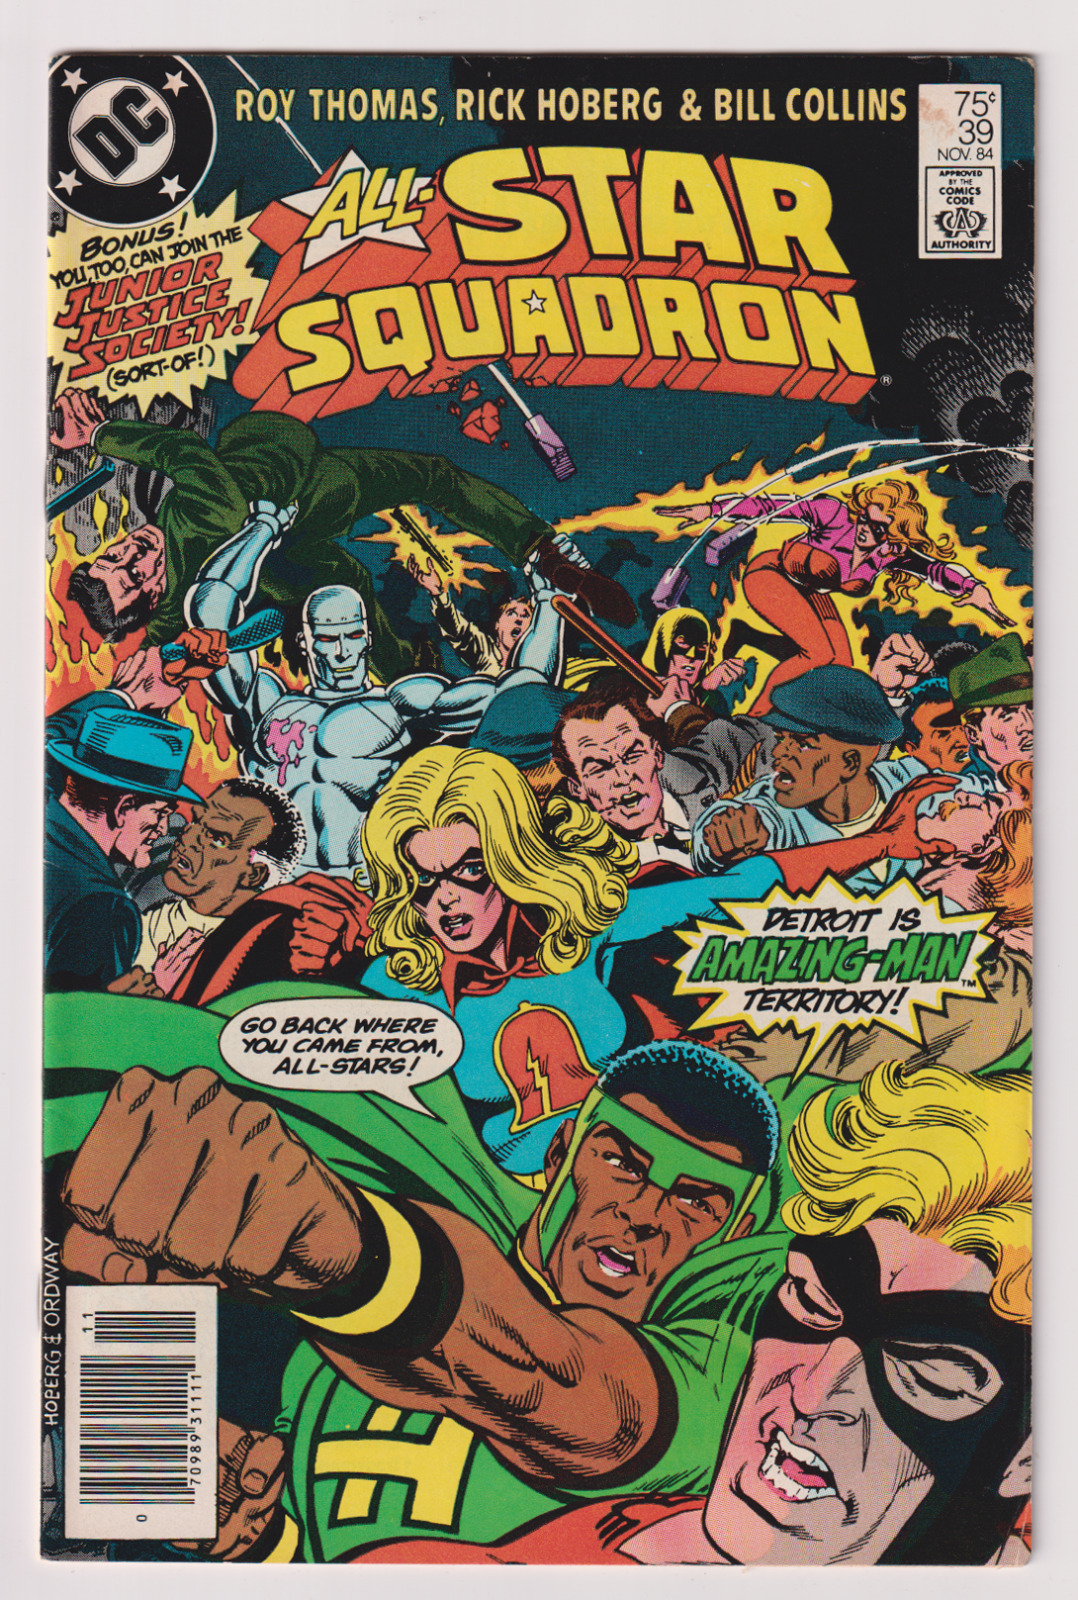 Zullen Wens spoel DC Comics! All-Star Squadron! Issue #39! | Comic Books - Copper Age, DC  Comics, Superhero / HipComic